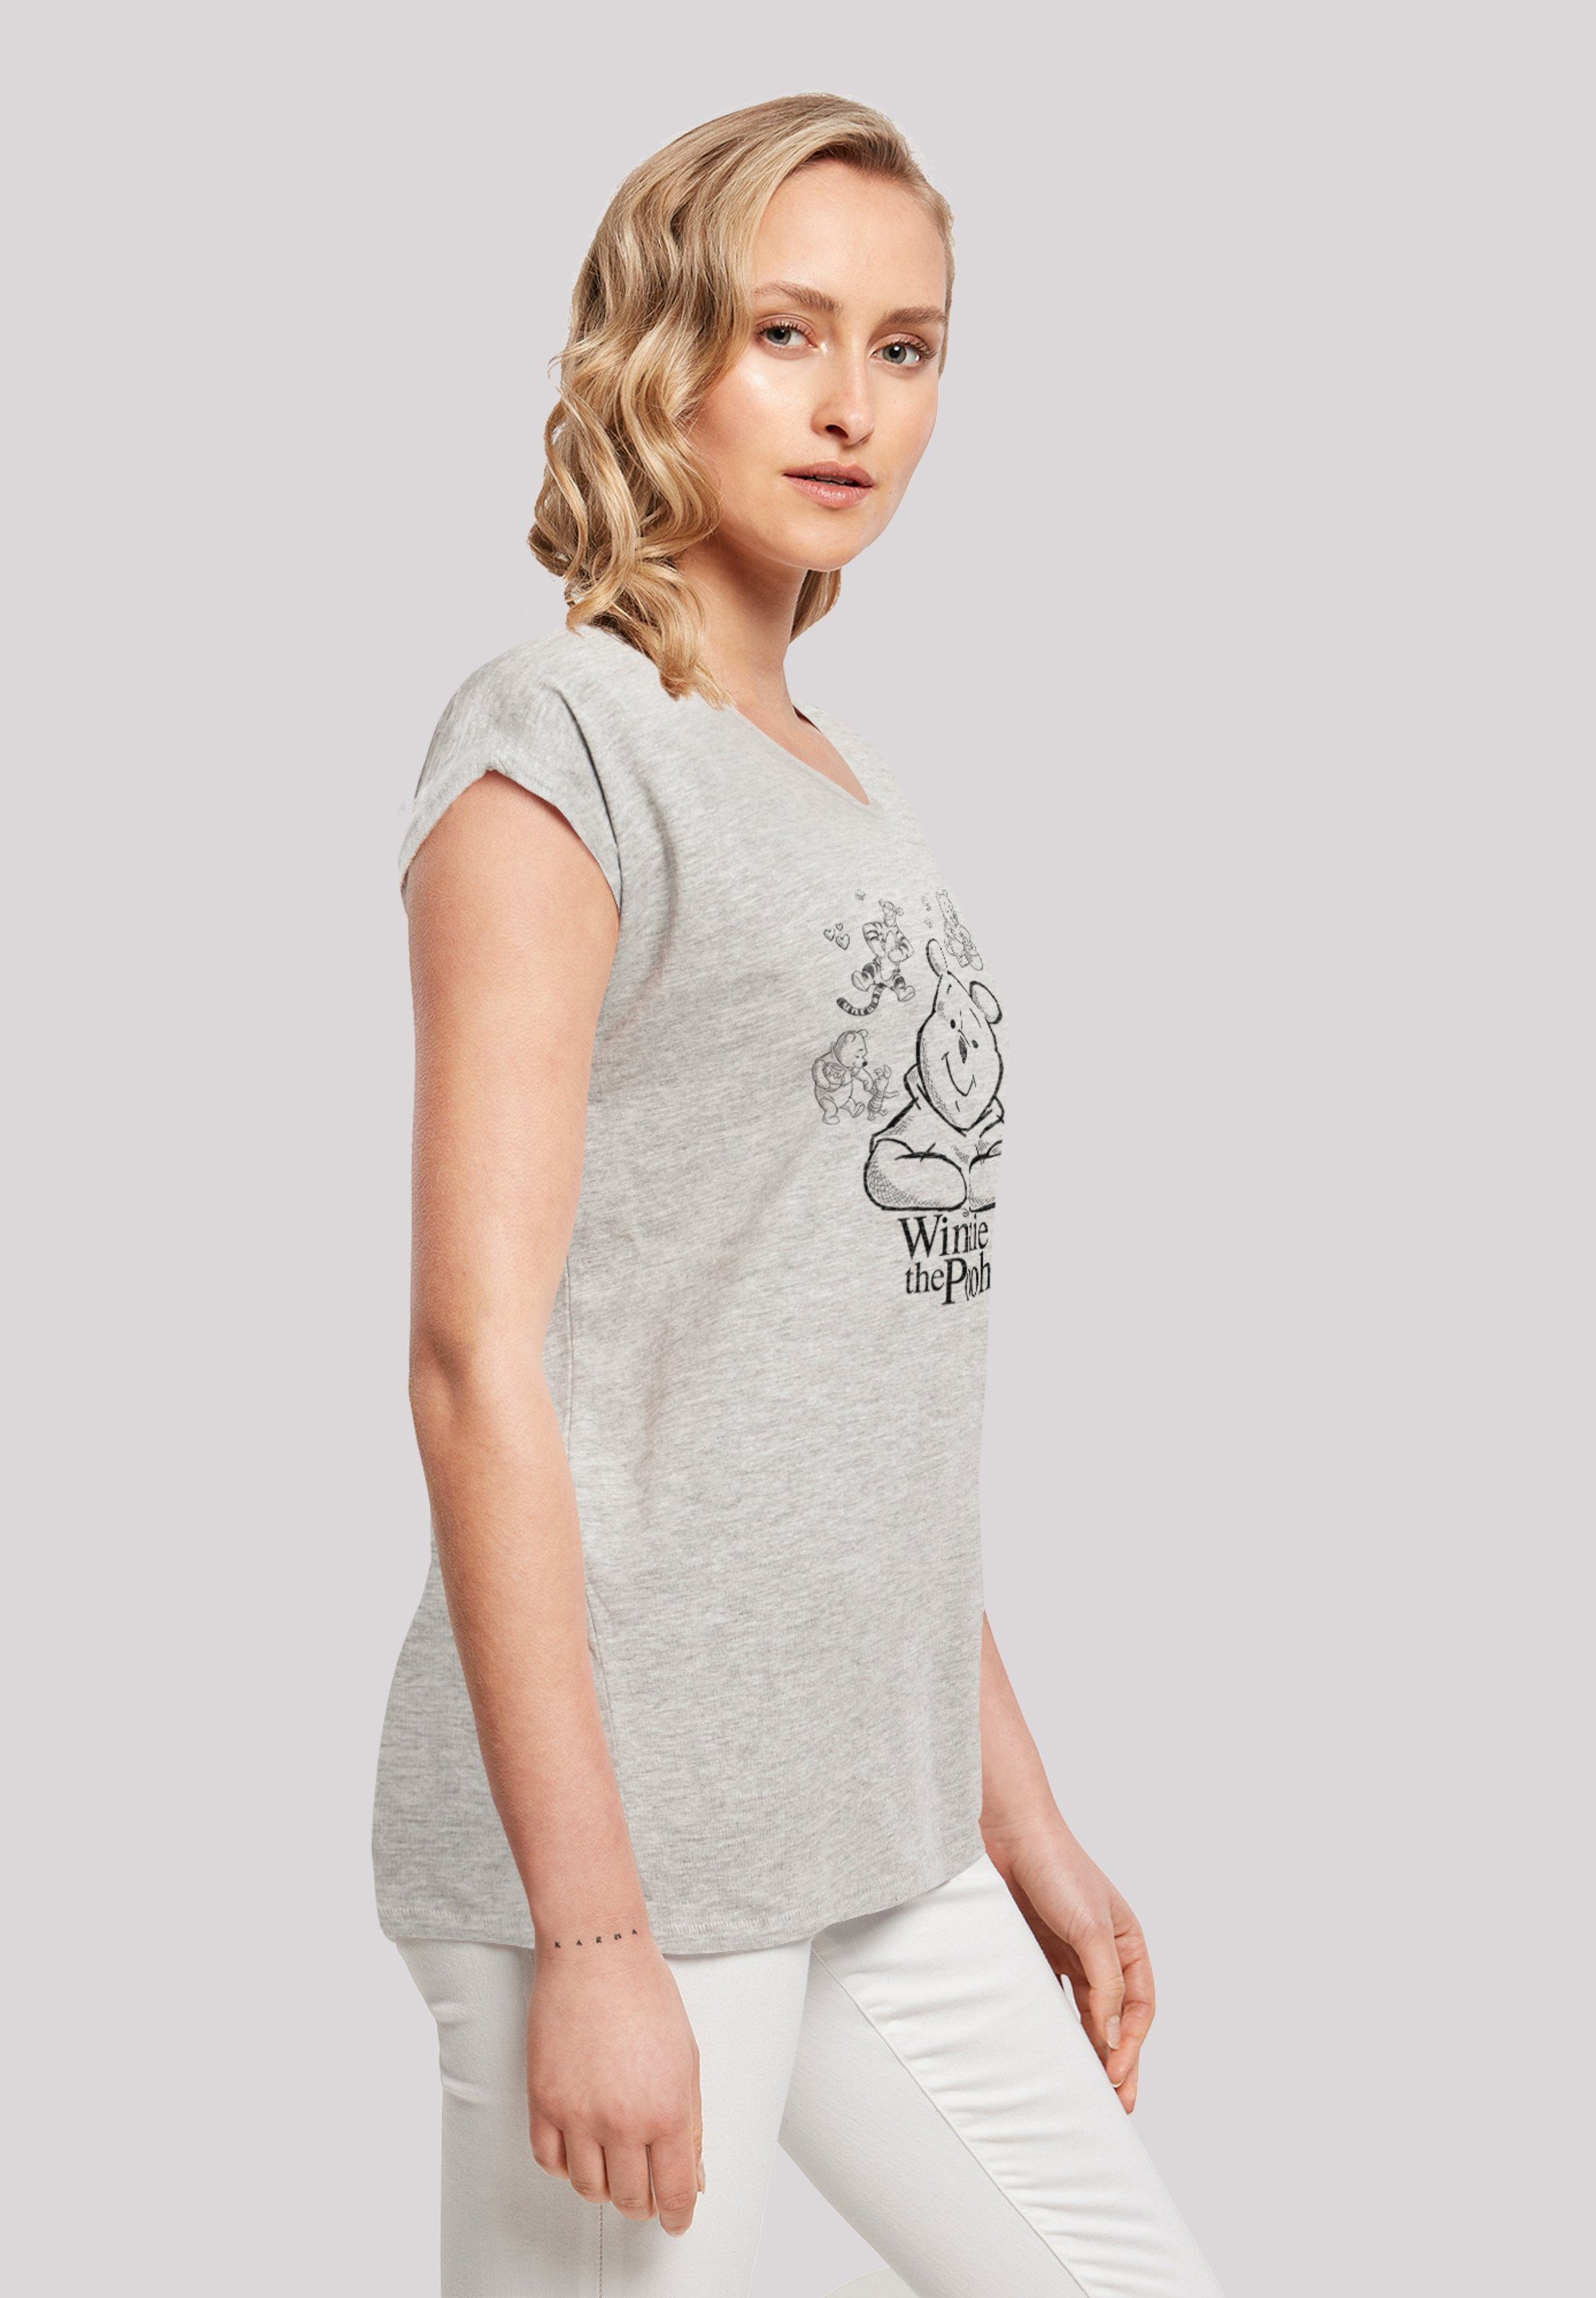 Bär Print Puuh Sketch heather Collage Der F4NT4STIC T-Shirt Winnie grey